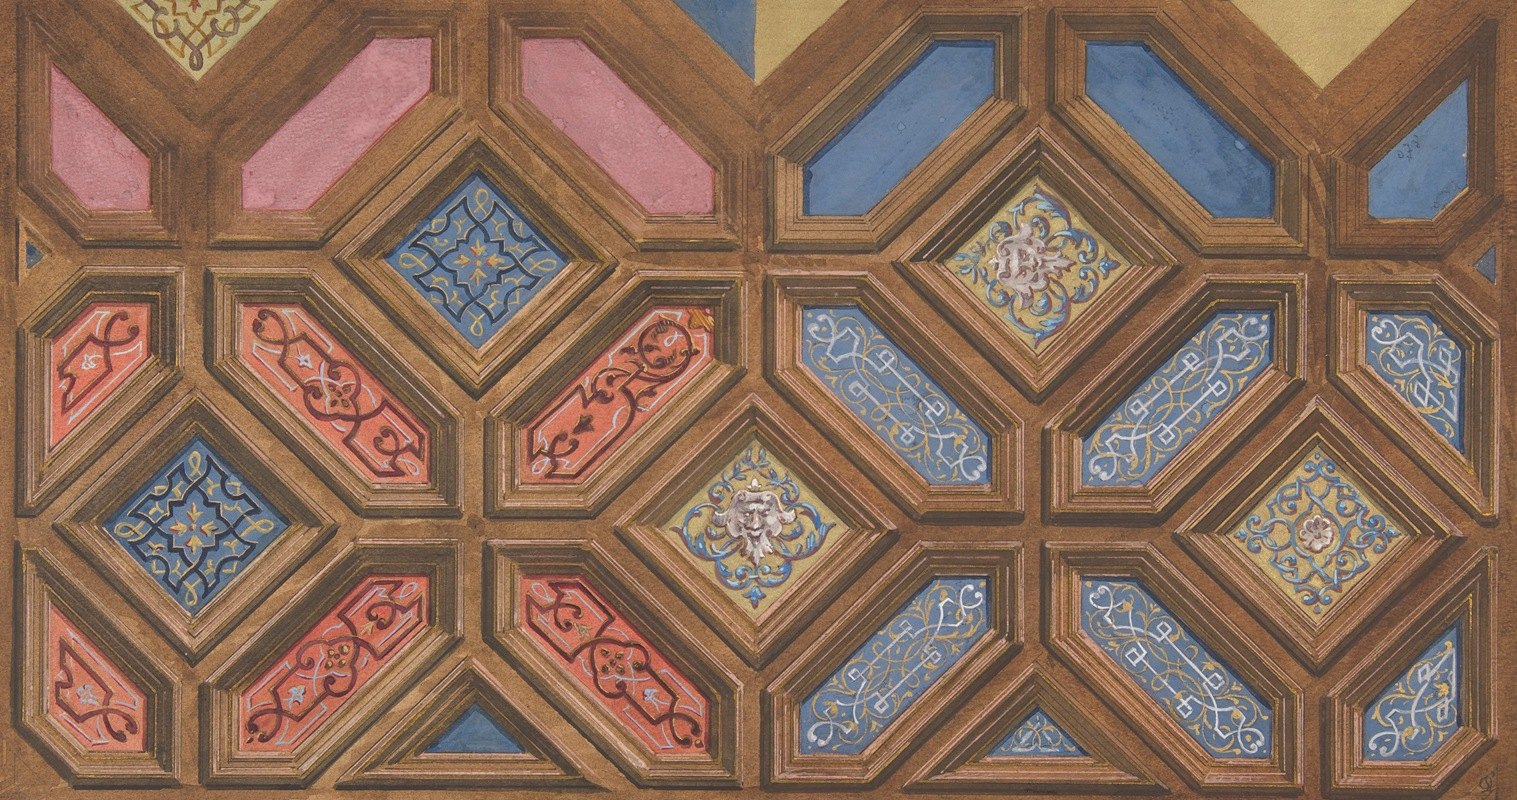 格子天花板装饰的替代设计`Alternate designs for the decoration of a coffered ceiling (1840–97) by Jules-Edmond-Charles Lachaise